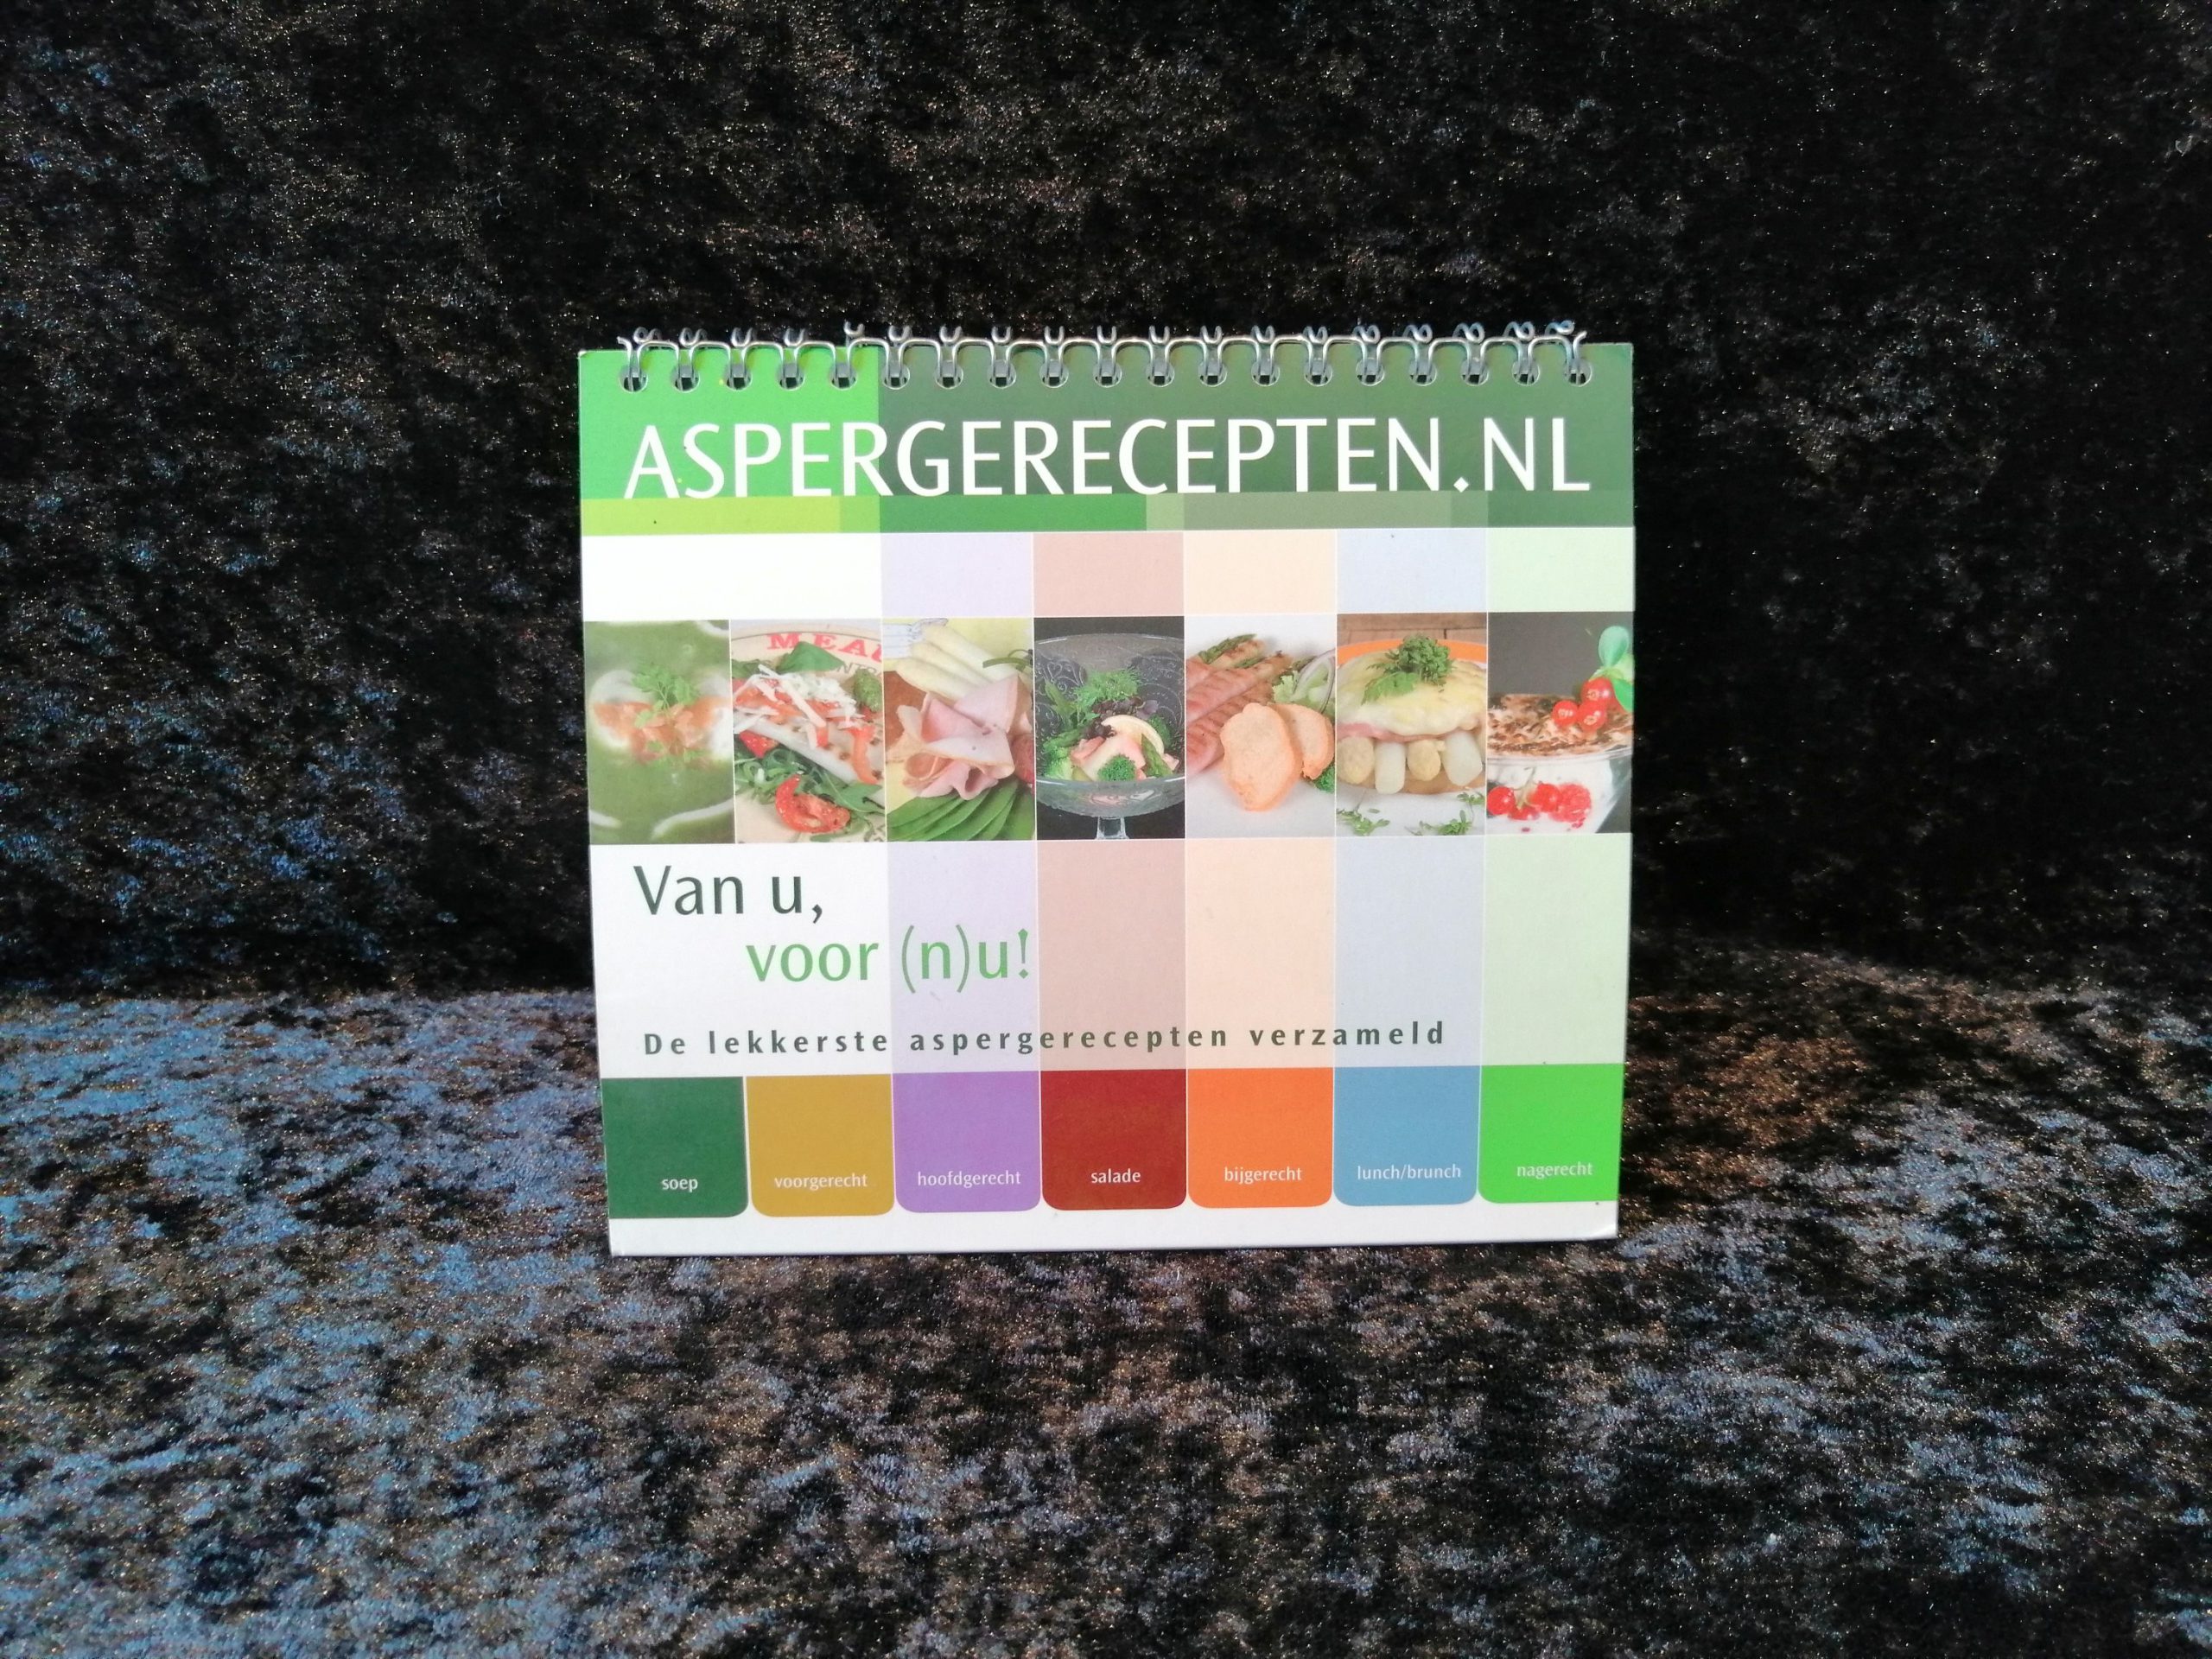 Aspergerecepten.nl